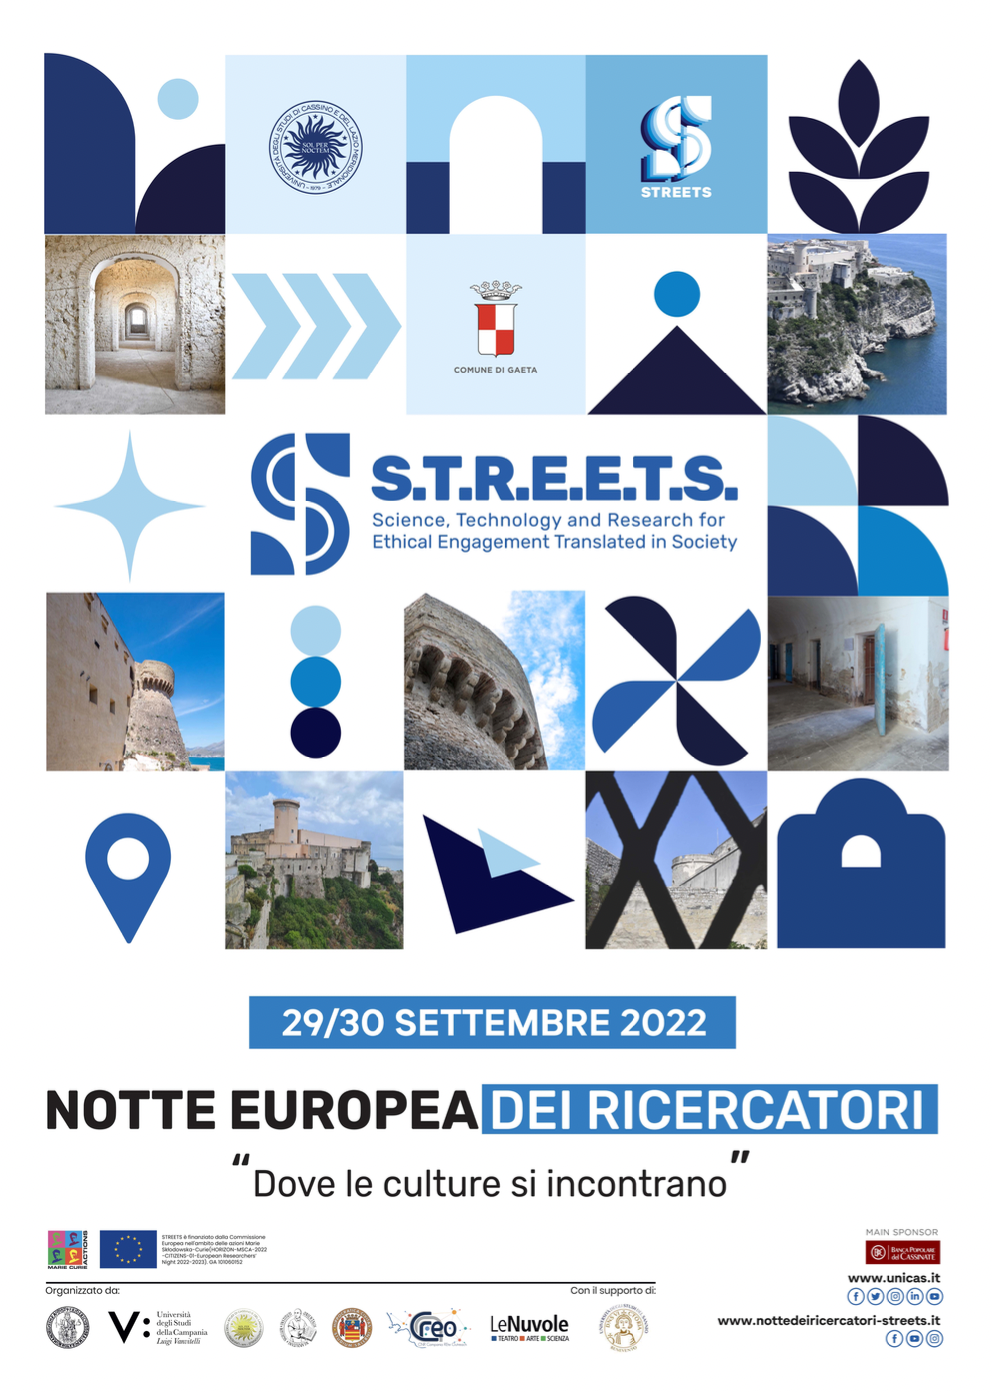 Notte Europea dei Ricercatori 2022, il Castello Angioino pronto ad ospitare il progetto "STREETS"